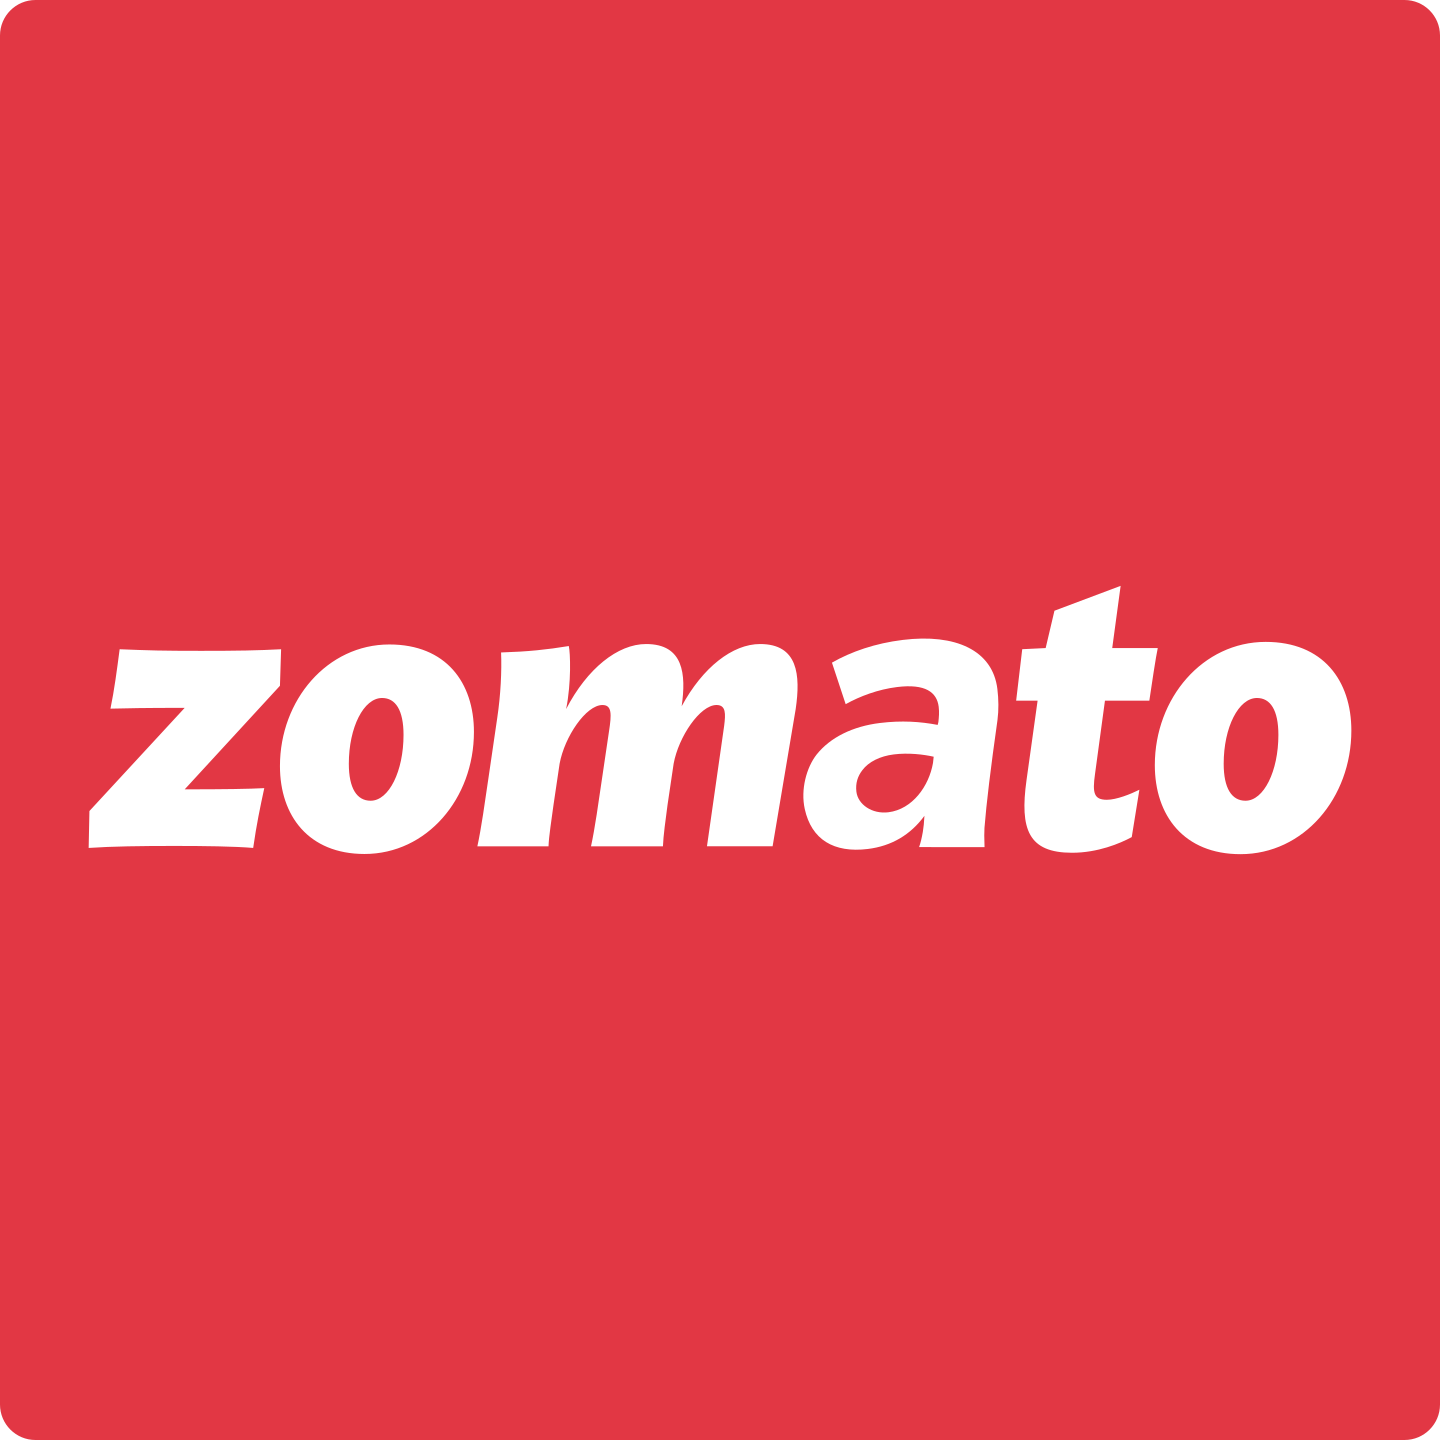 zomato logo 3 - Zomato Logo